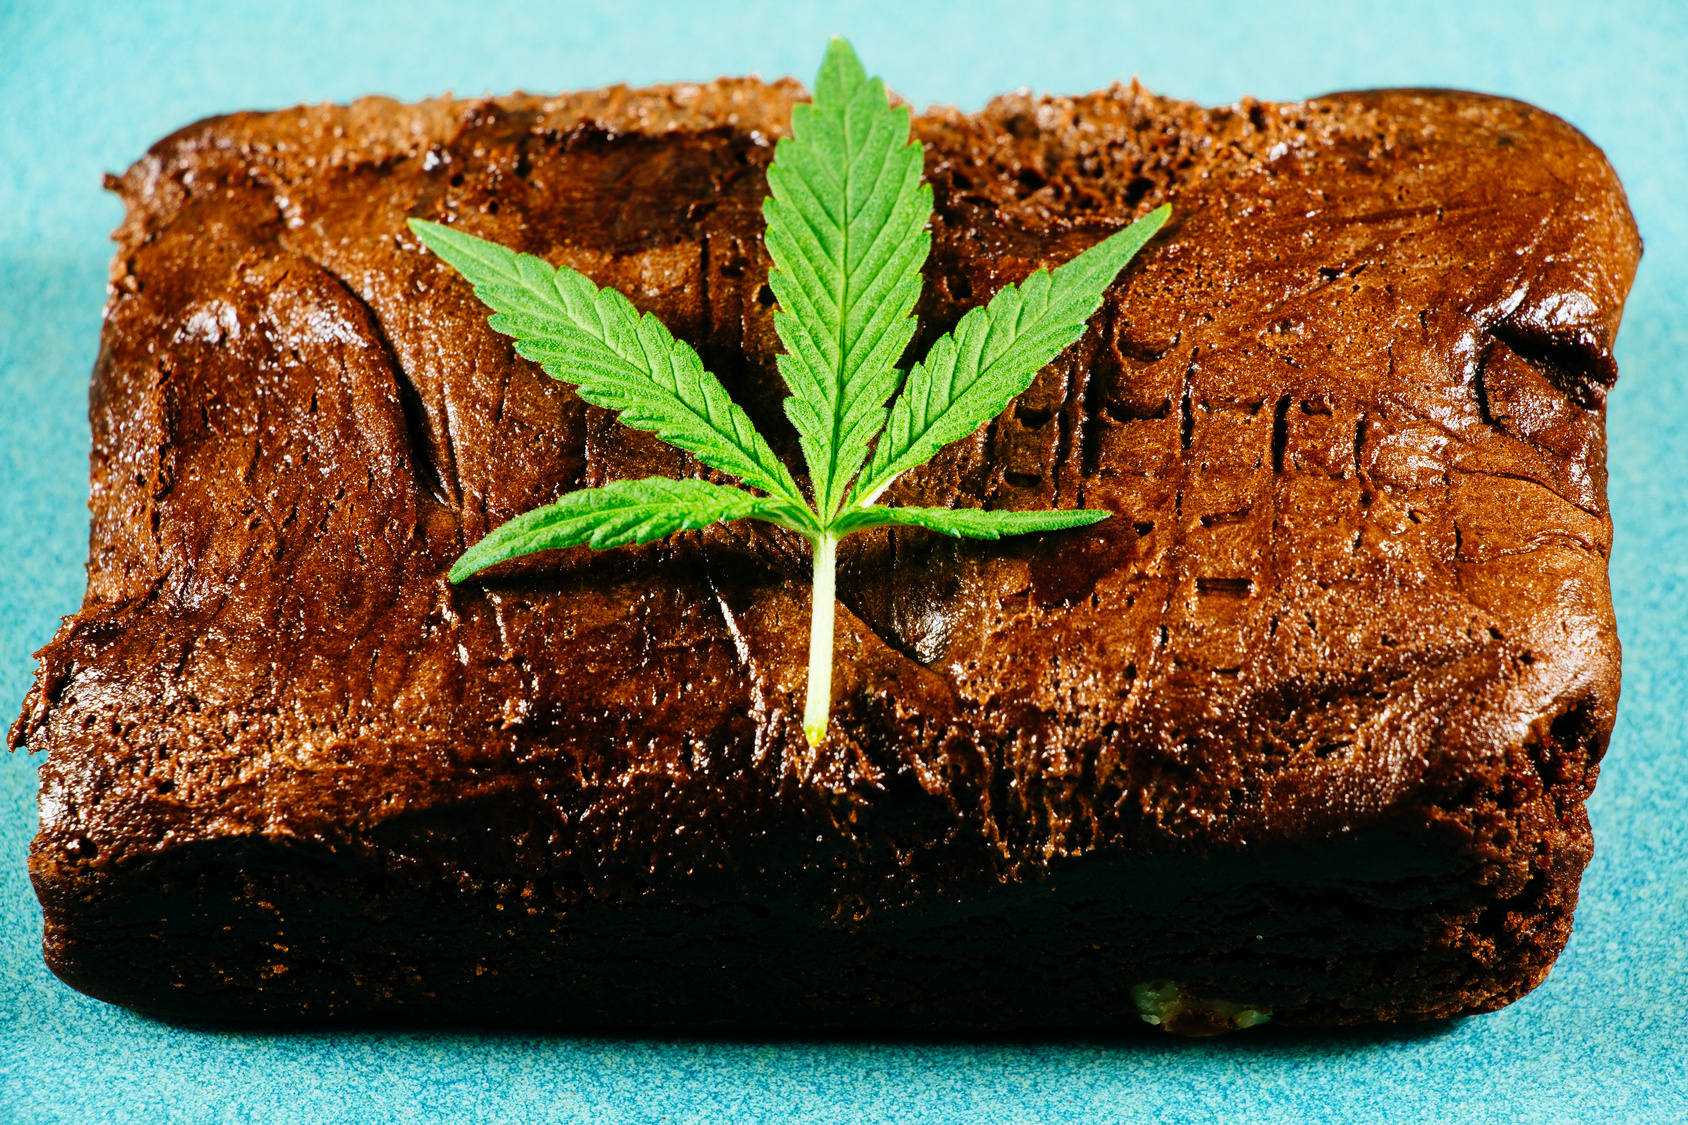 How to make marijuana brownies